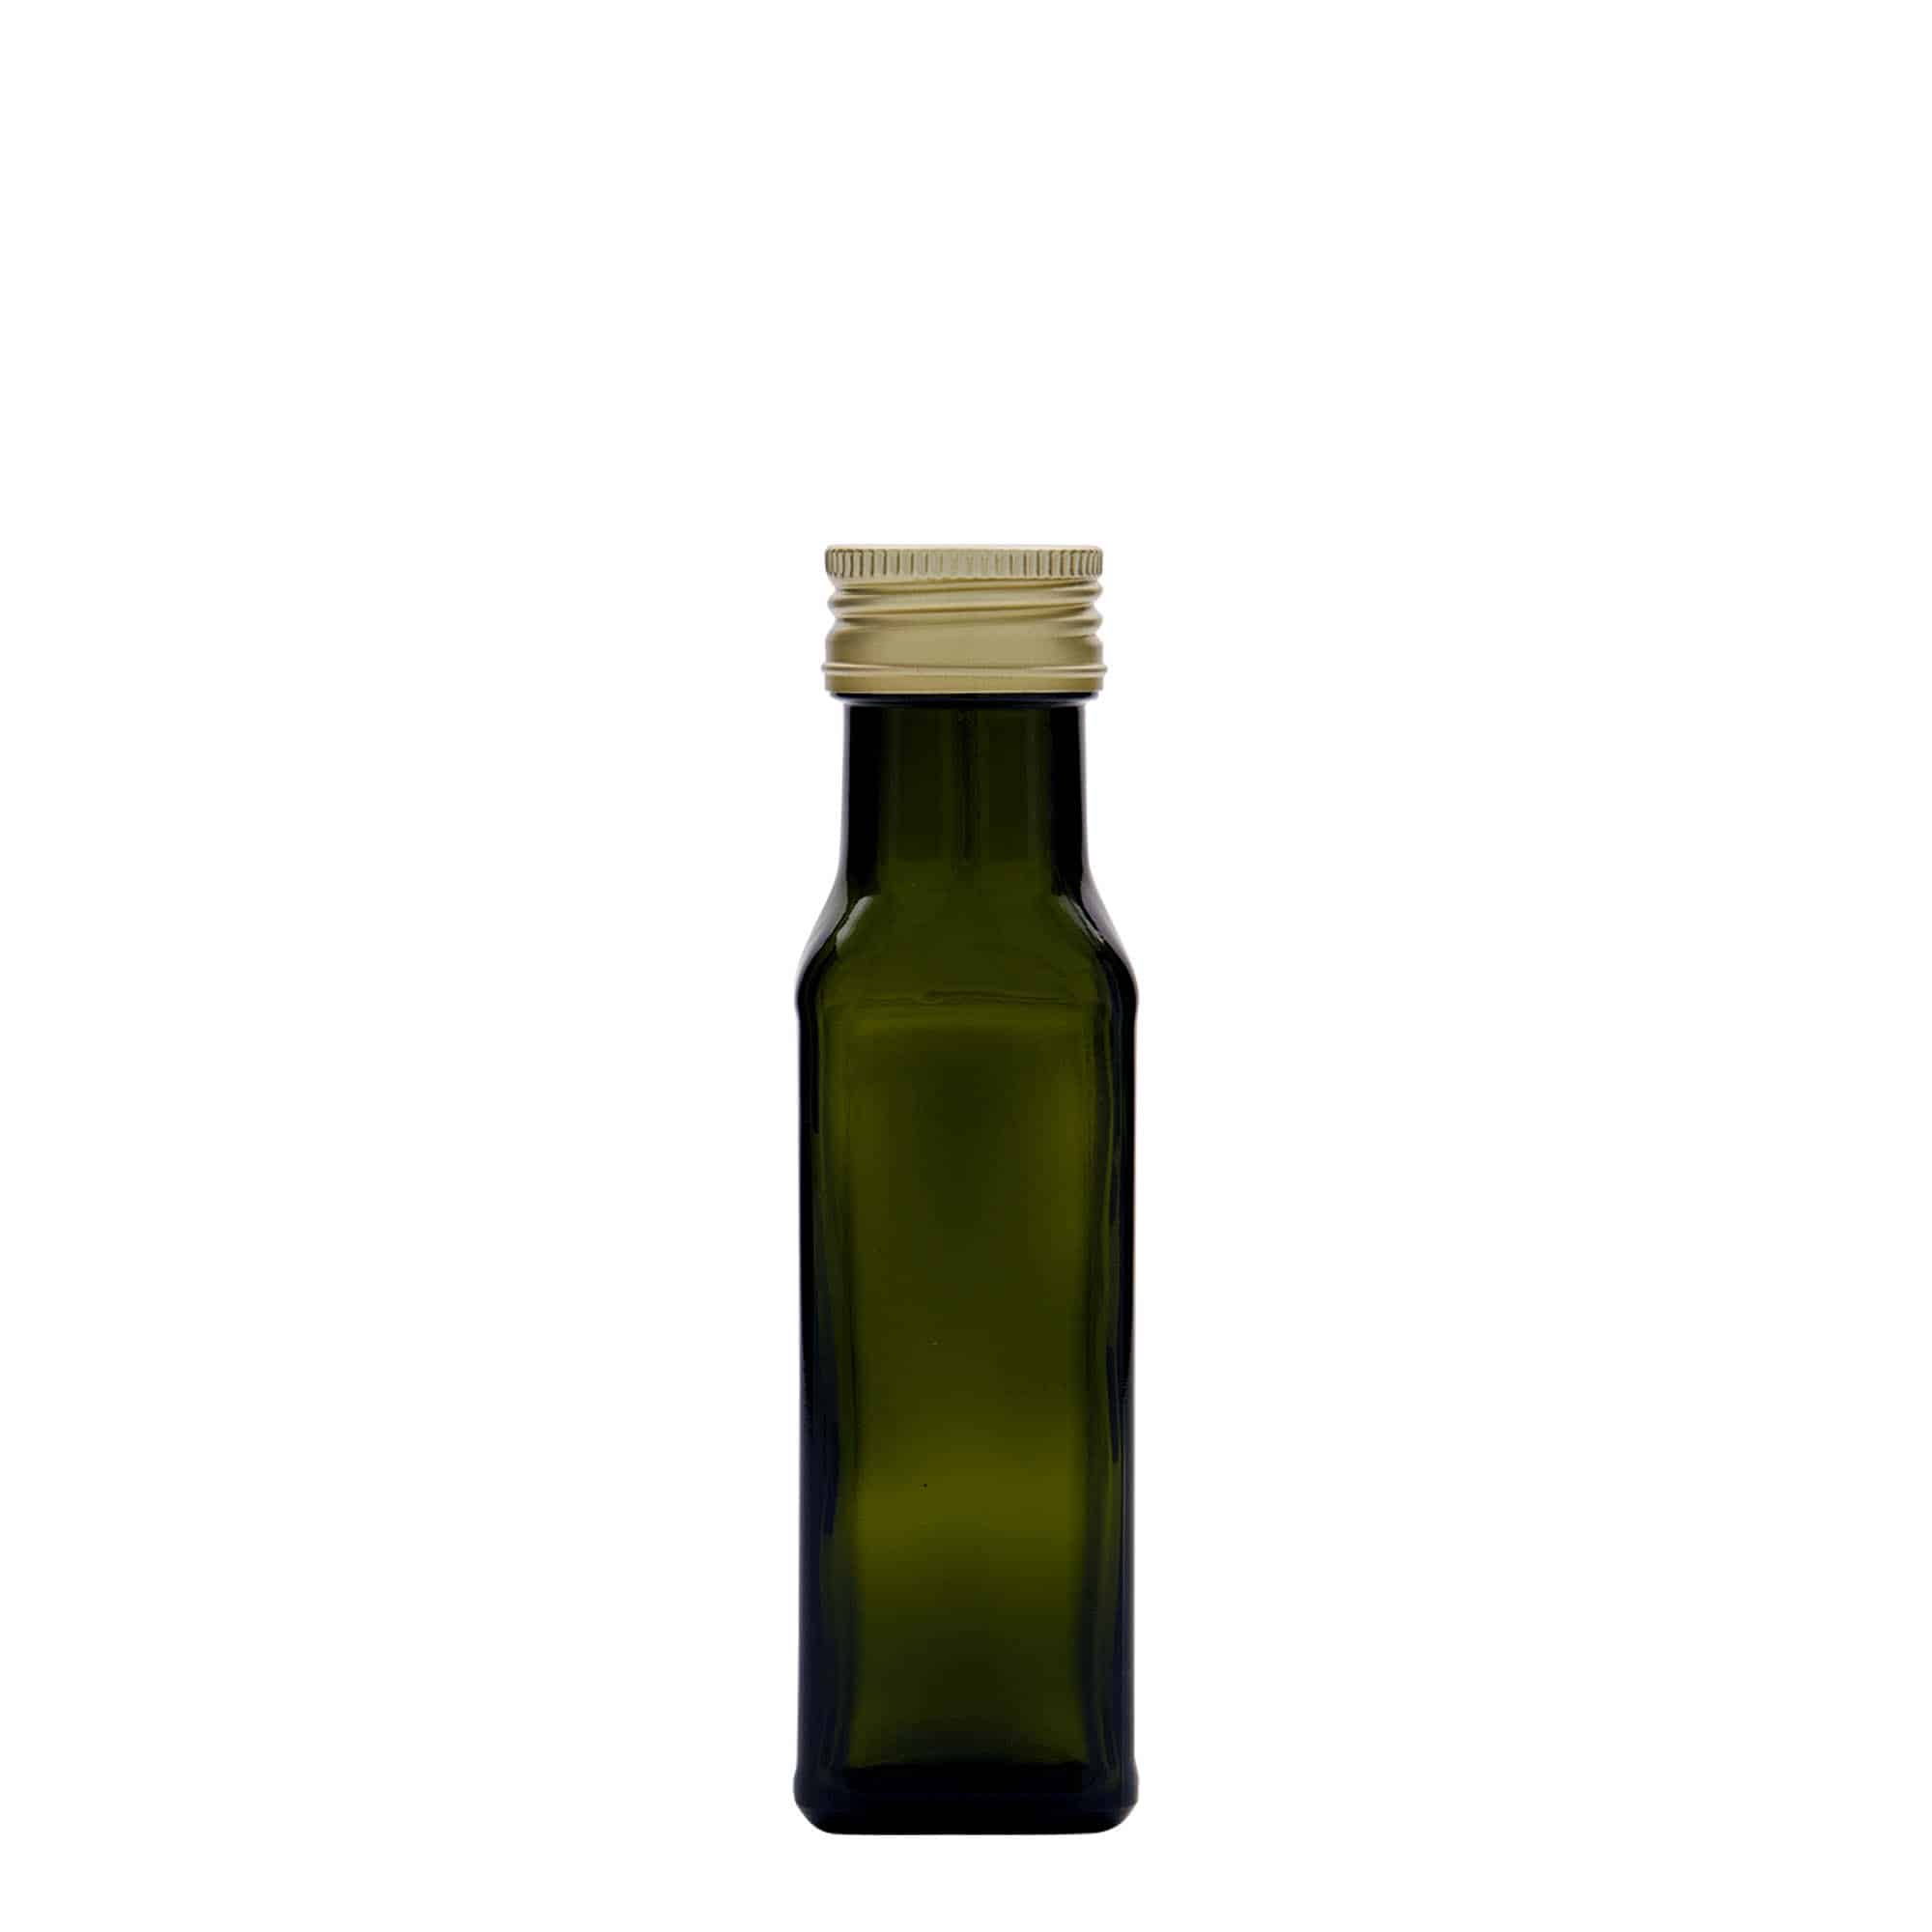 100 ml glasflaske 'Marasca', kvadratisk, antikgrøn, åbning: PP 31,5